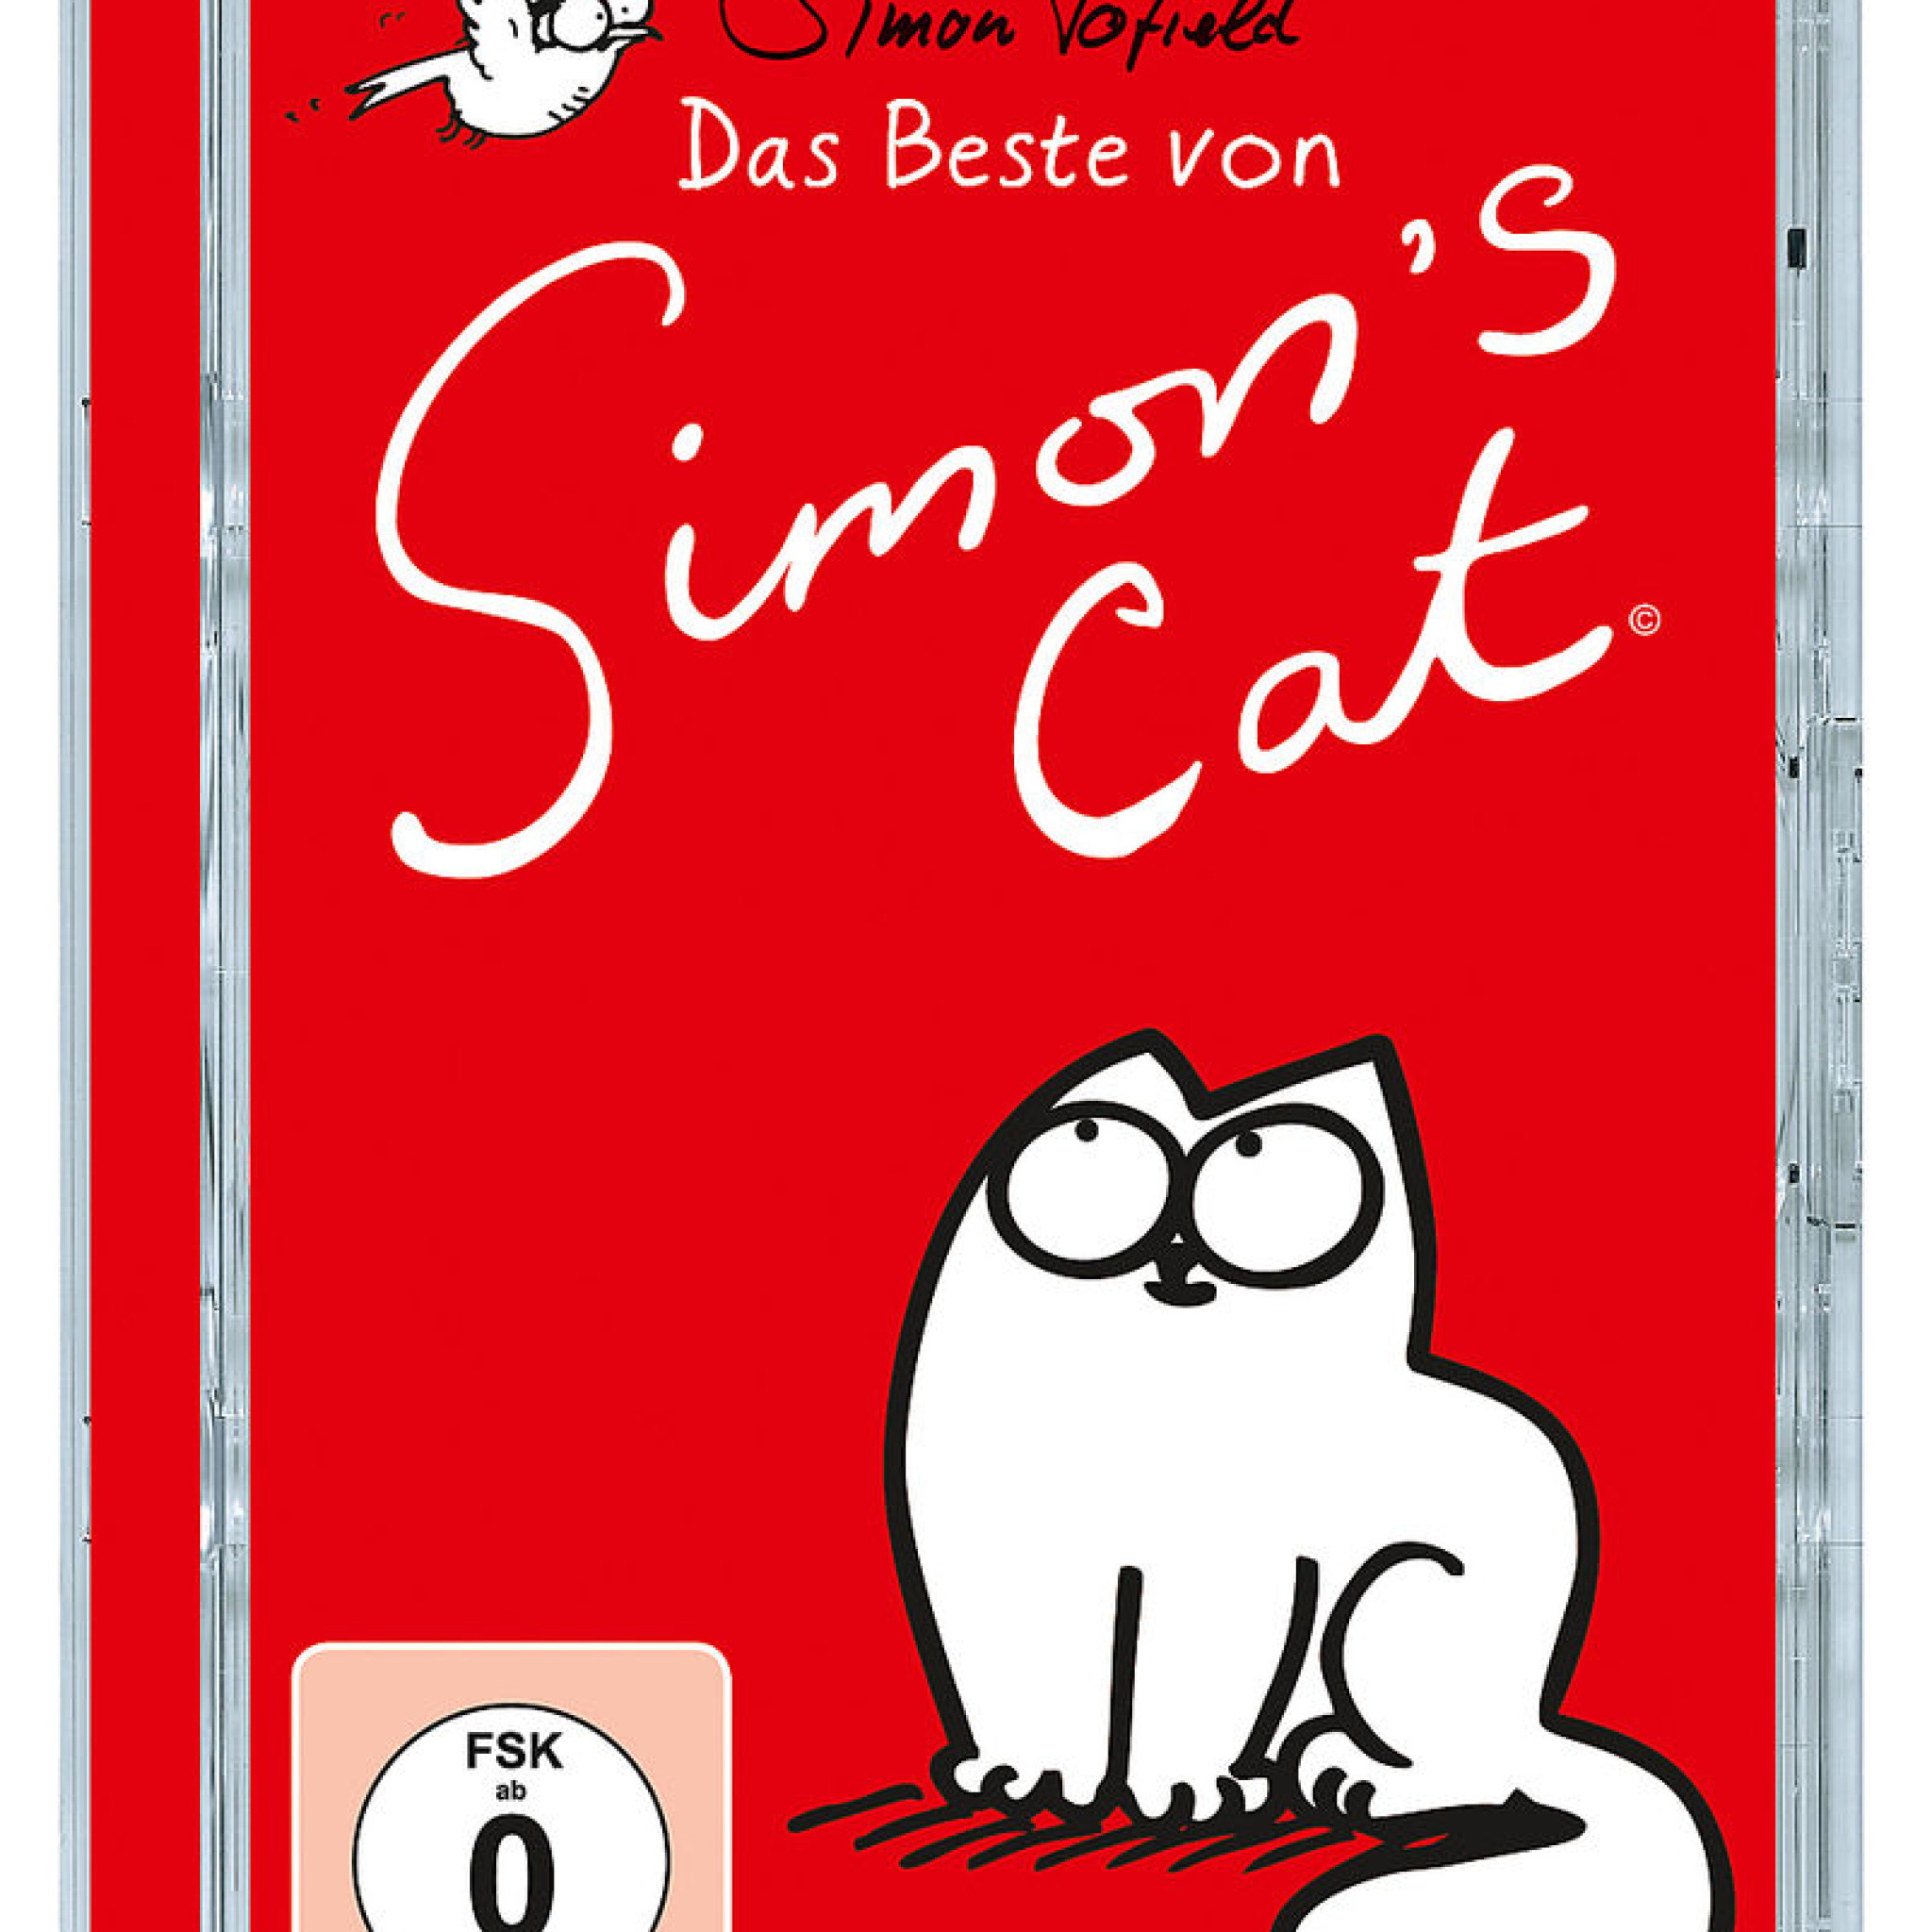 Das Beste von Simon's Cat: Simon's Cat